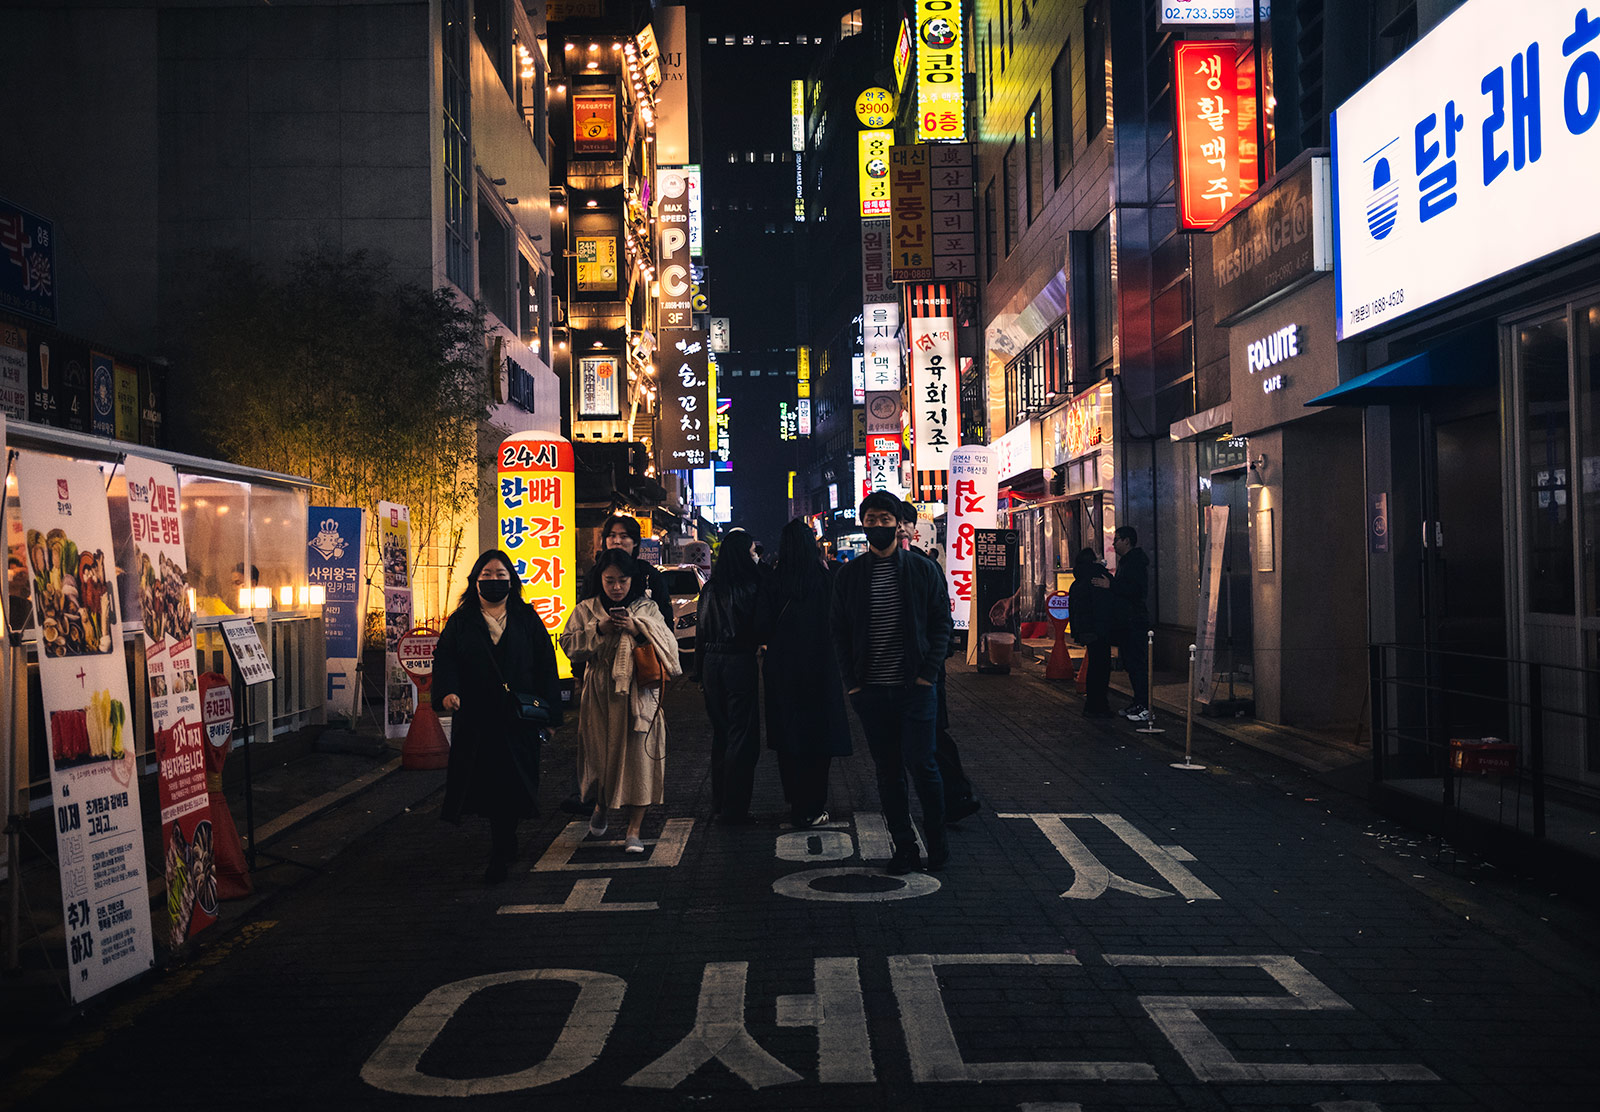 People walking down street at night